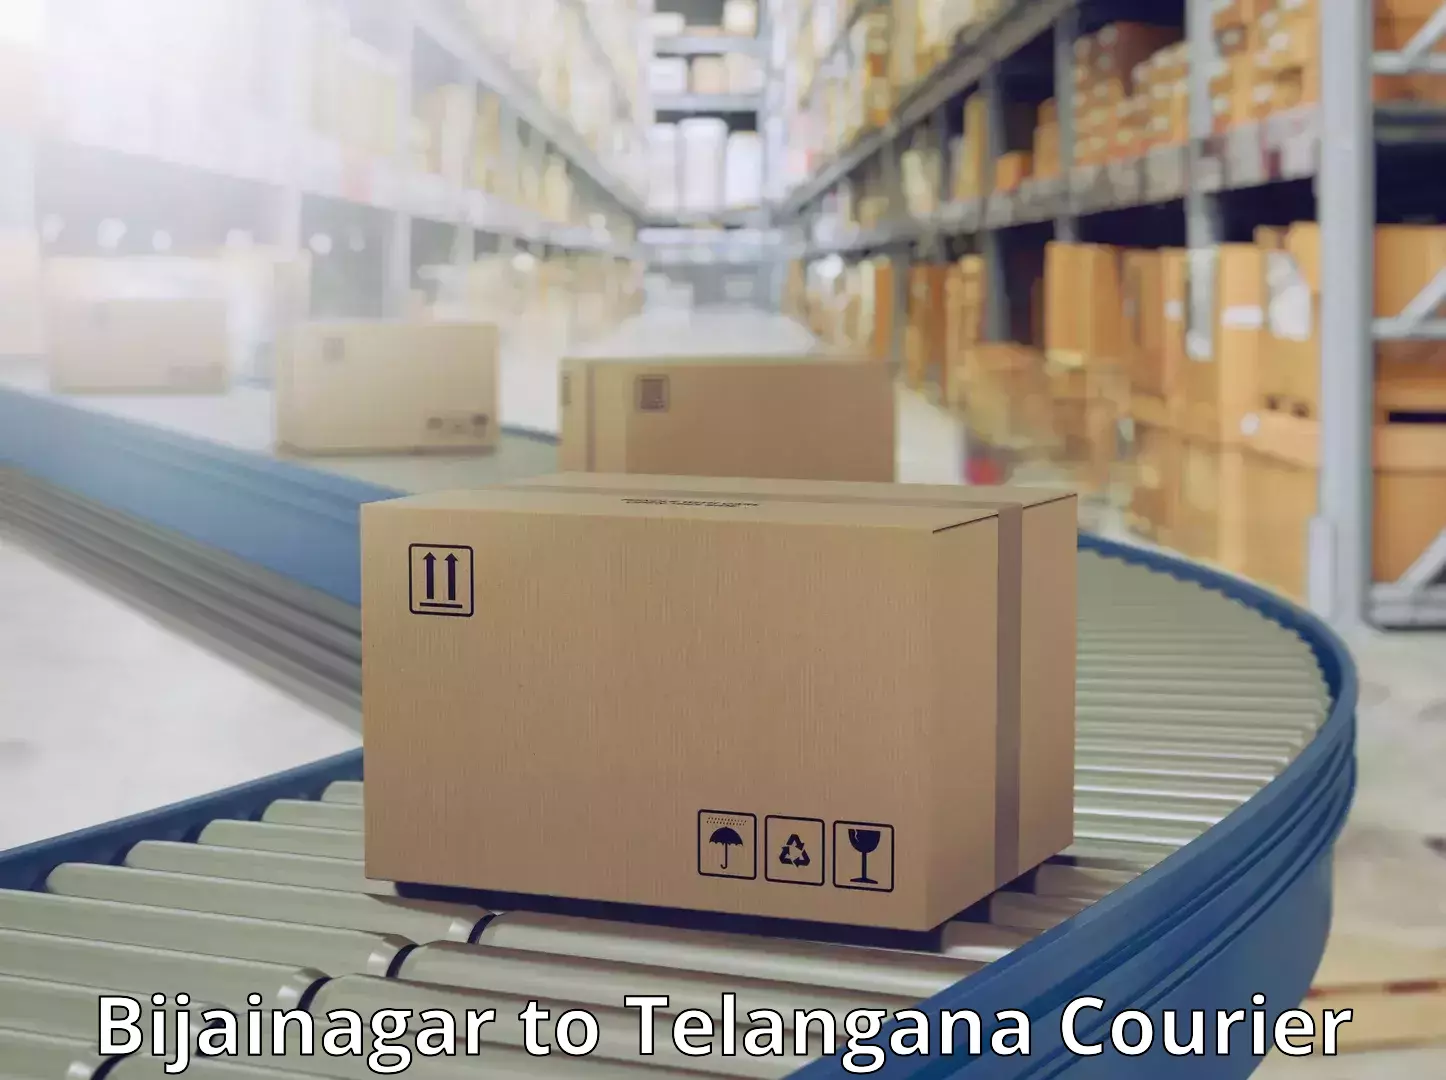 Quality courier services Bijainagar to Telangana